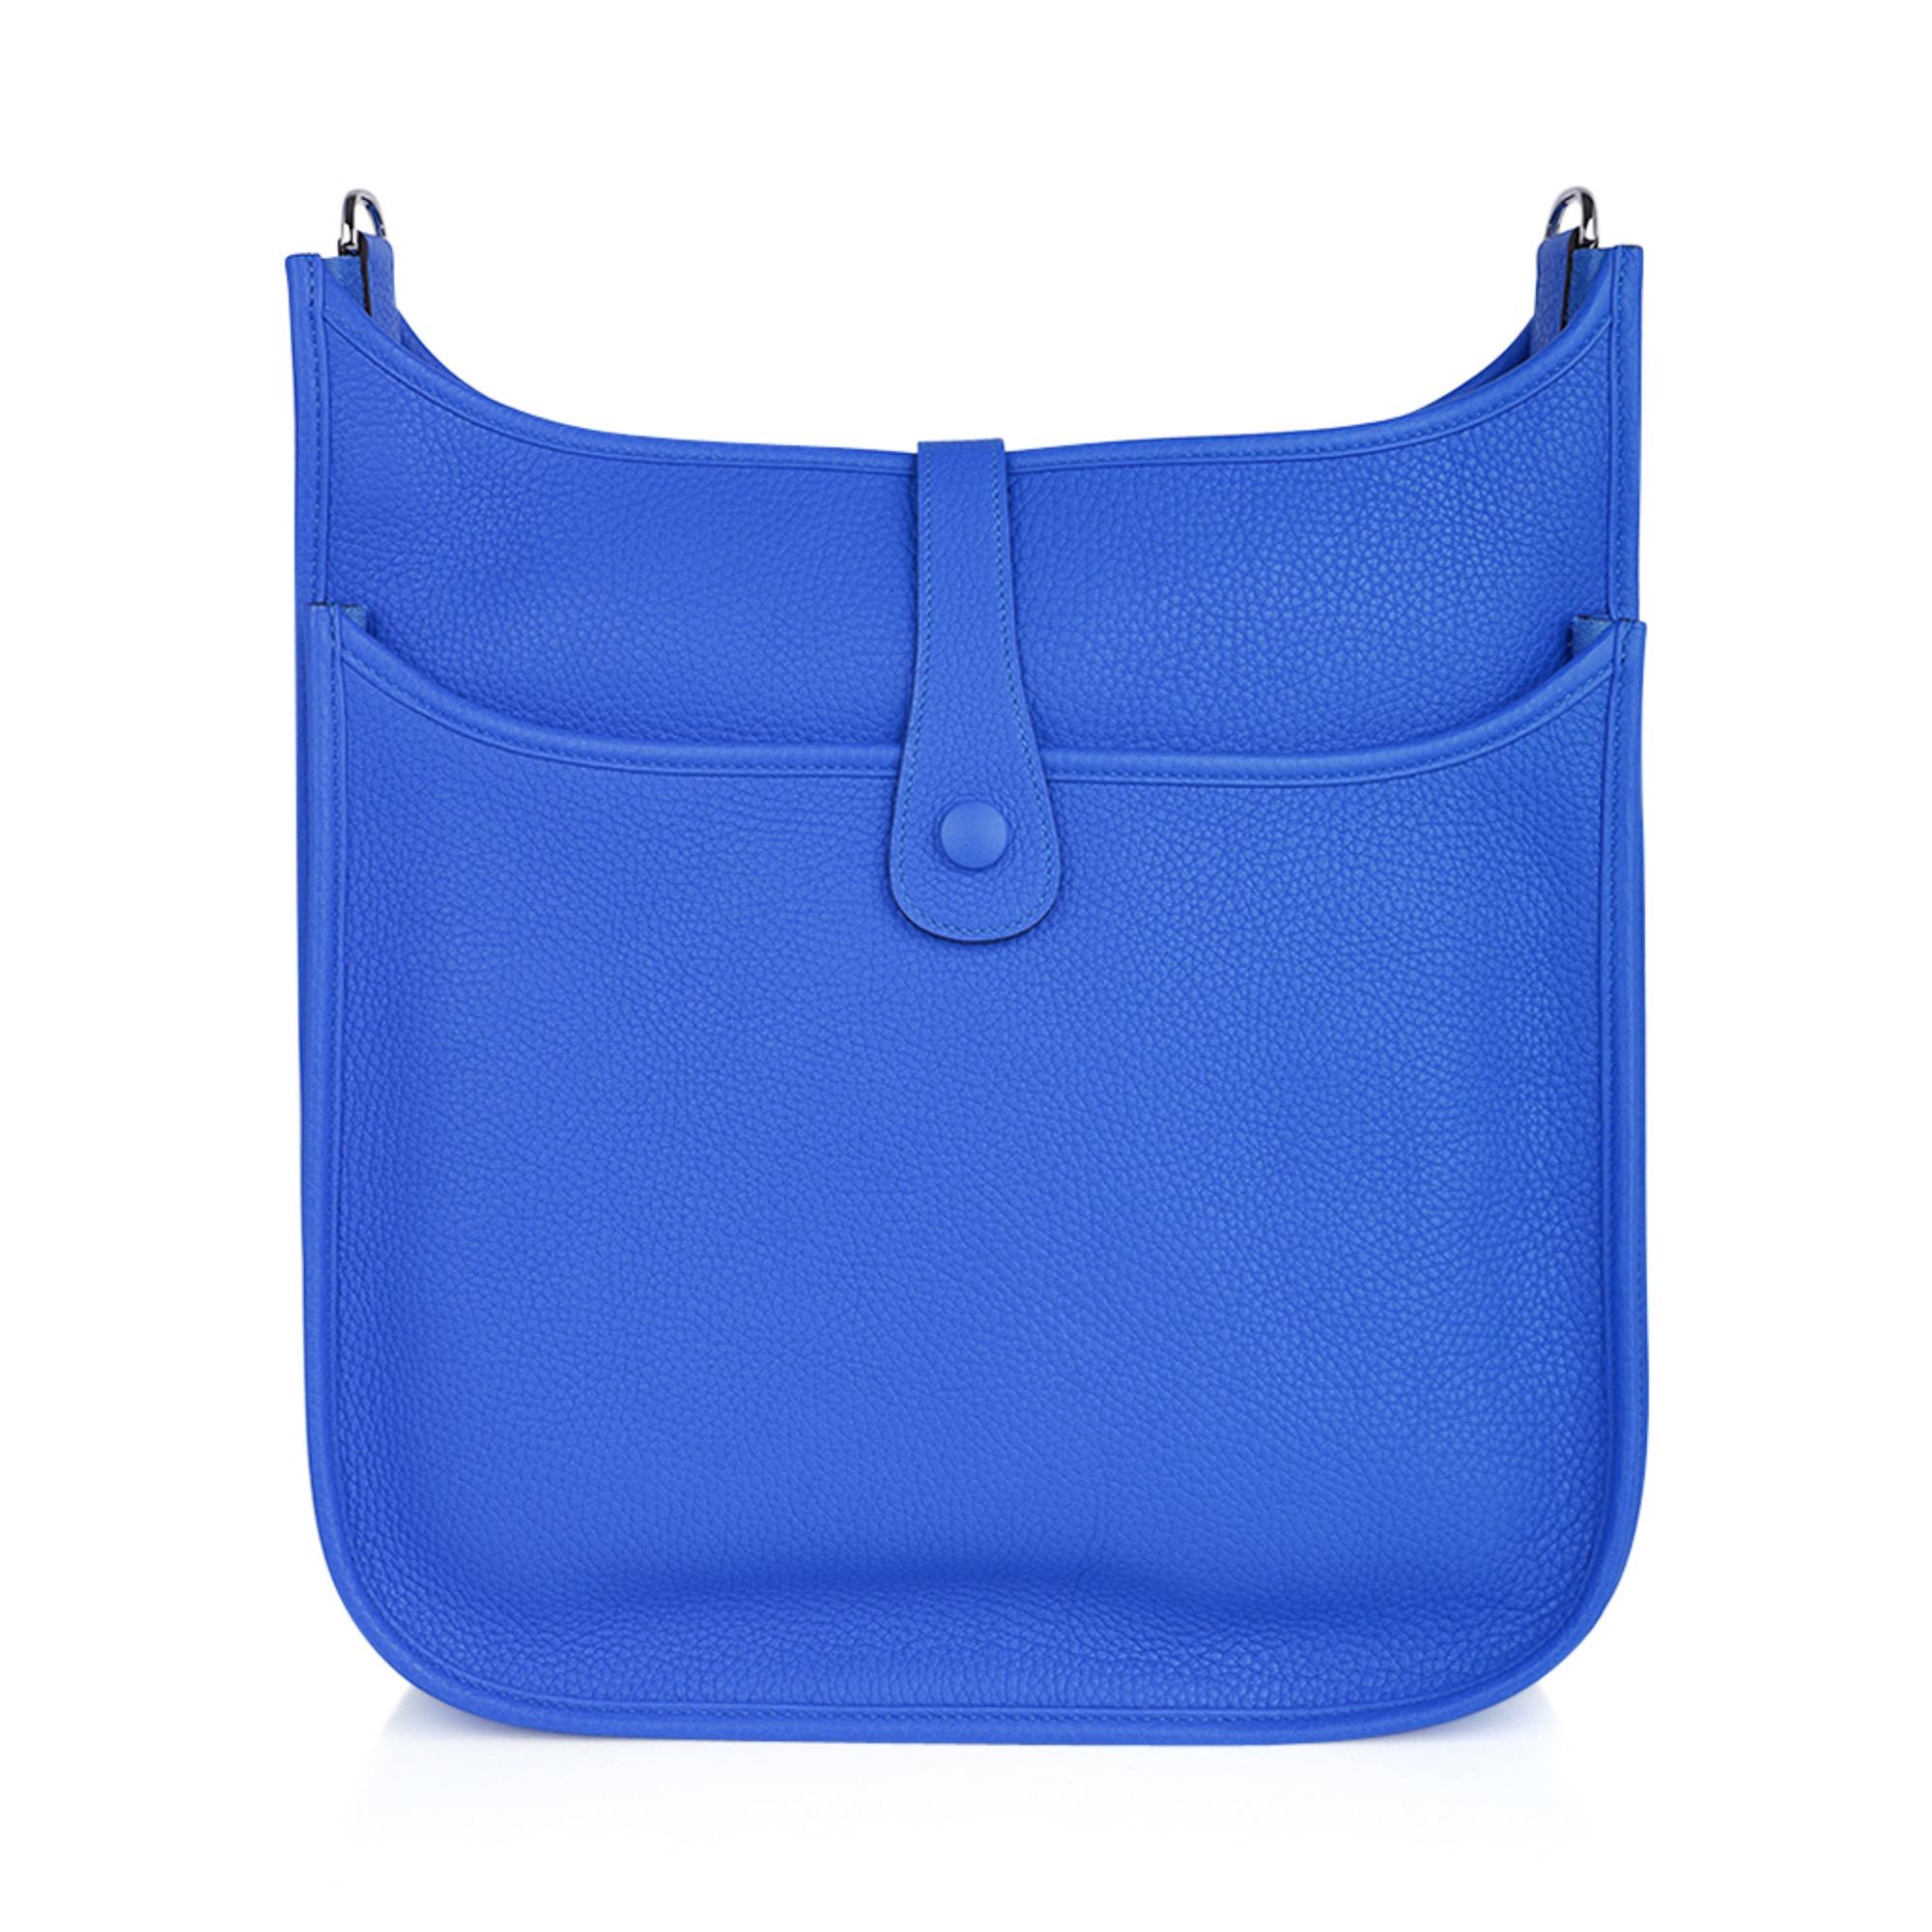 Women's or Men's Hermes Bag Evelyne GM Blue Hydra Clemence Palladium Hardware New w/ Box